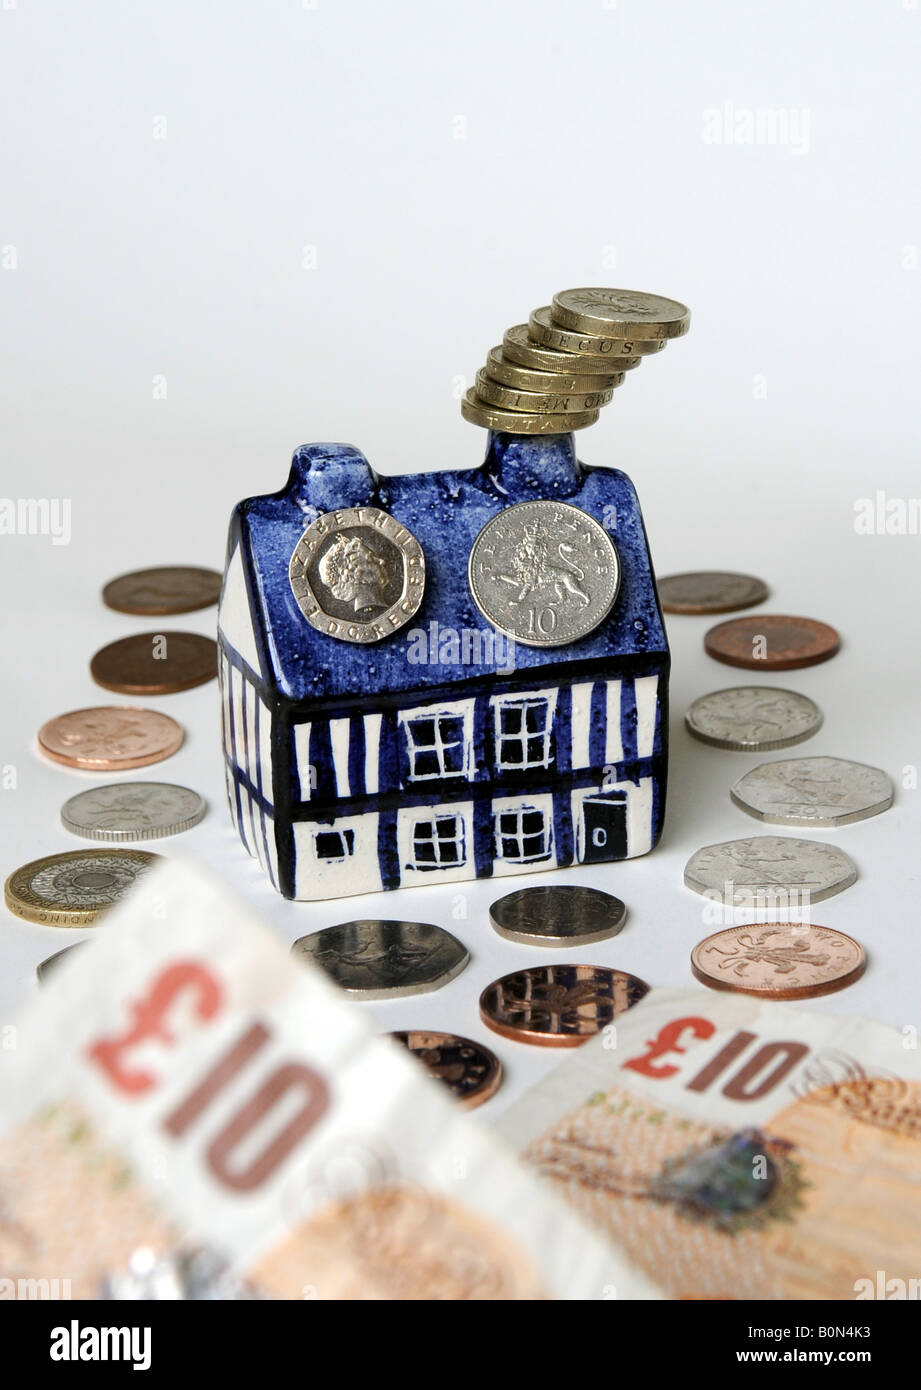 Un modello tradizionale cottage inglese con la valuta dell'Inghilterra,UK. Foto Stock